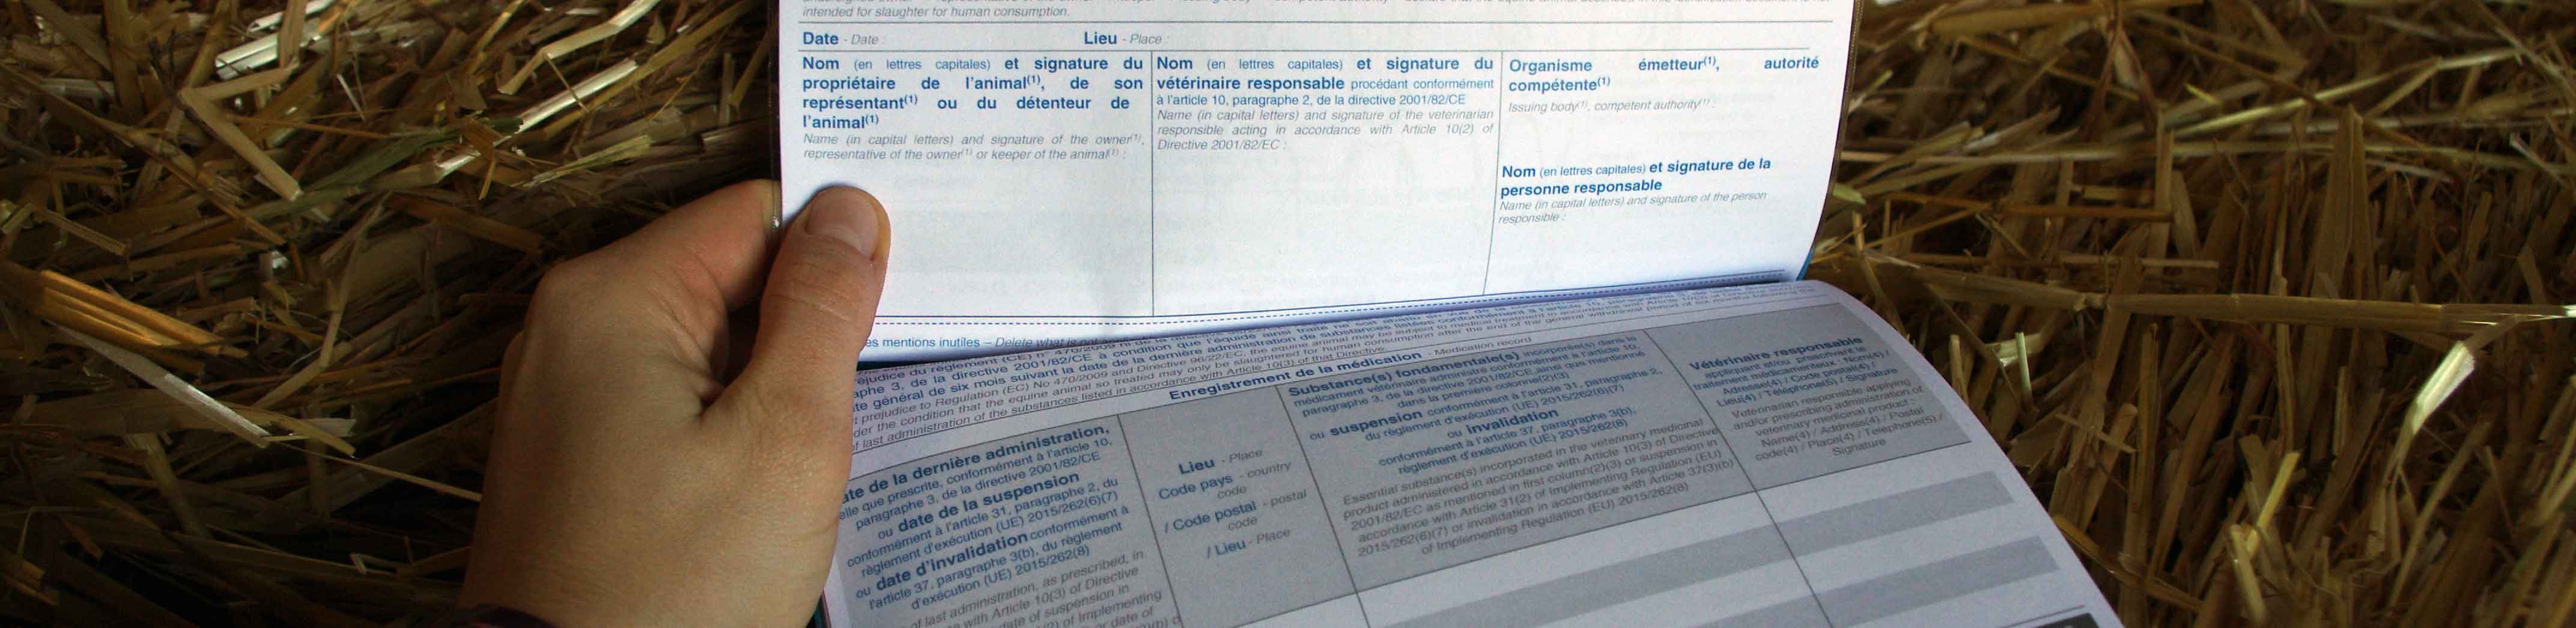 Page traitement médicamenteux d'un document d'identifcation